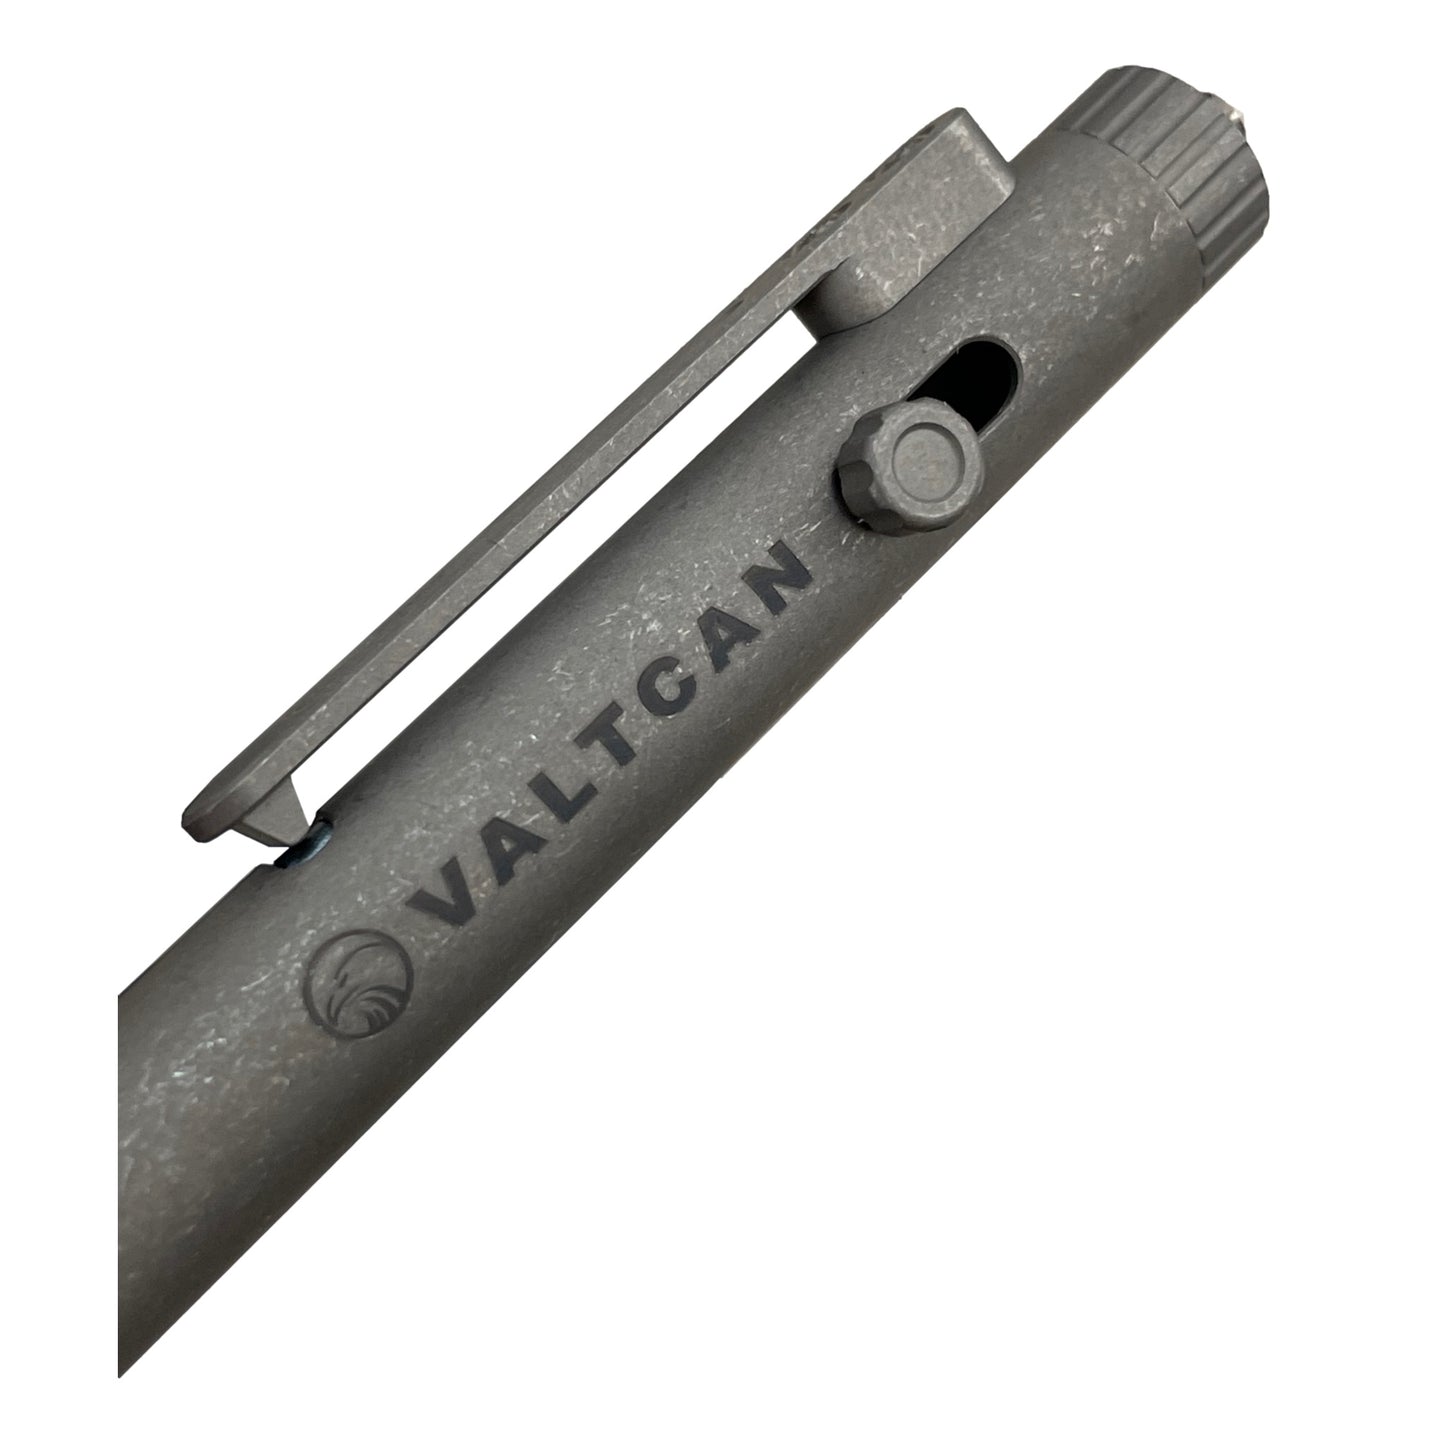 Valtcan Eclipse Titanium Pen EDC Writer Slim Design Stonewash